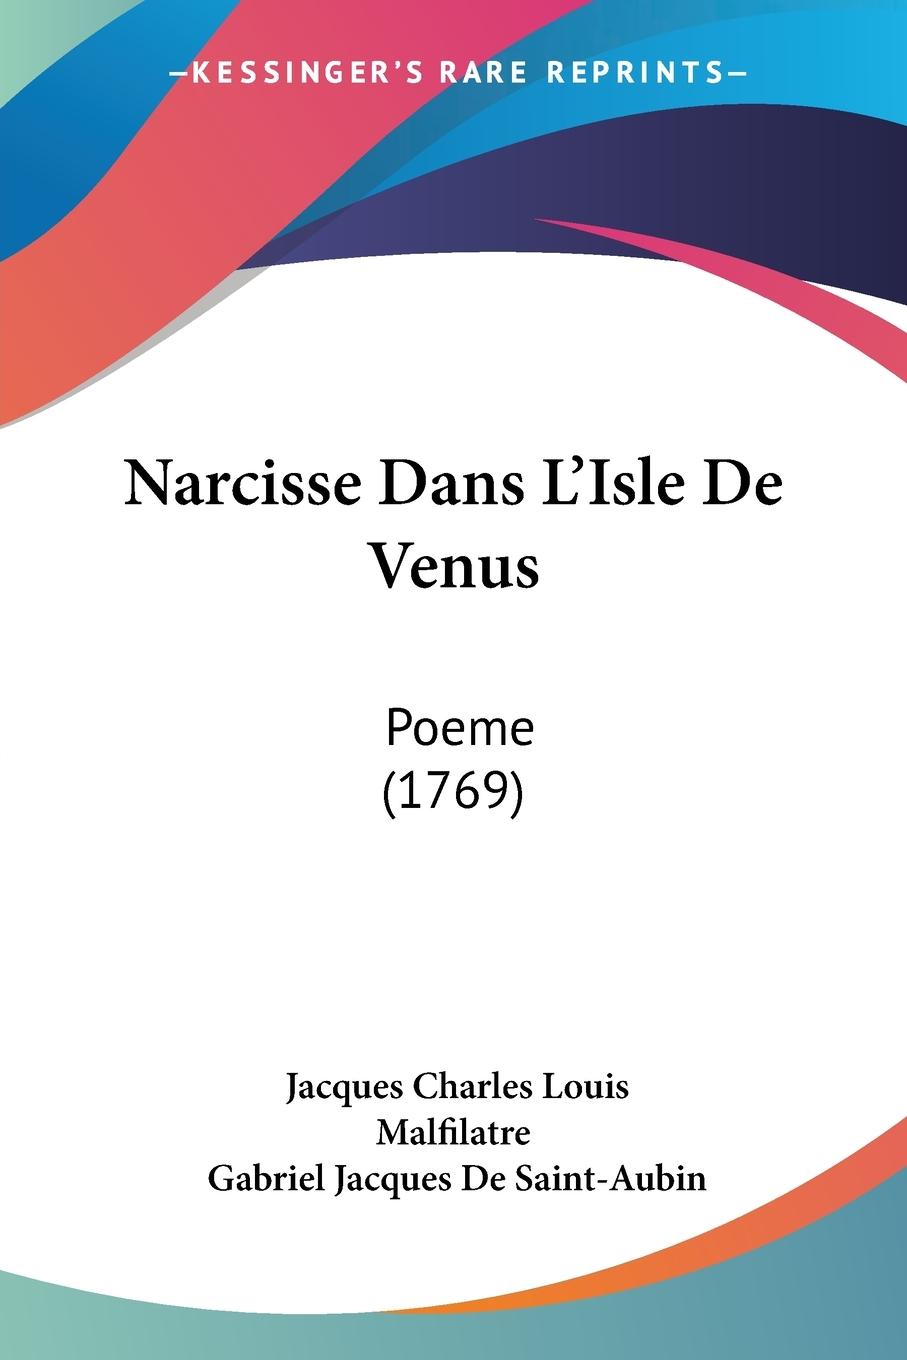 Narcisse Dans L Isle De Venus - Malfilatre, Jacques Charles Louis De Saint-Aubin, Gabriel Jacques